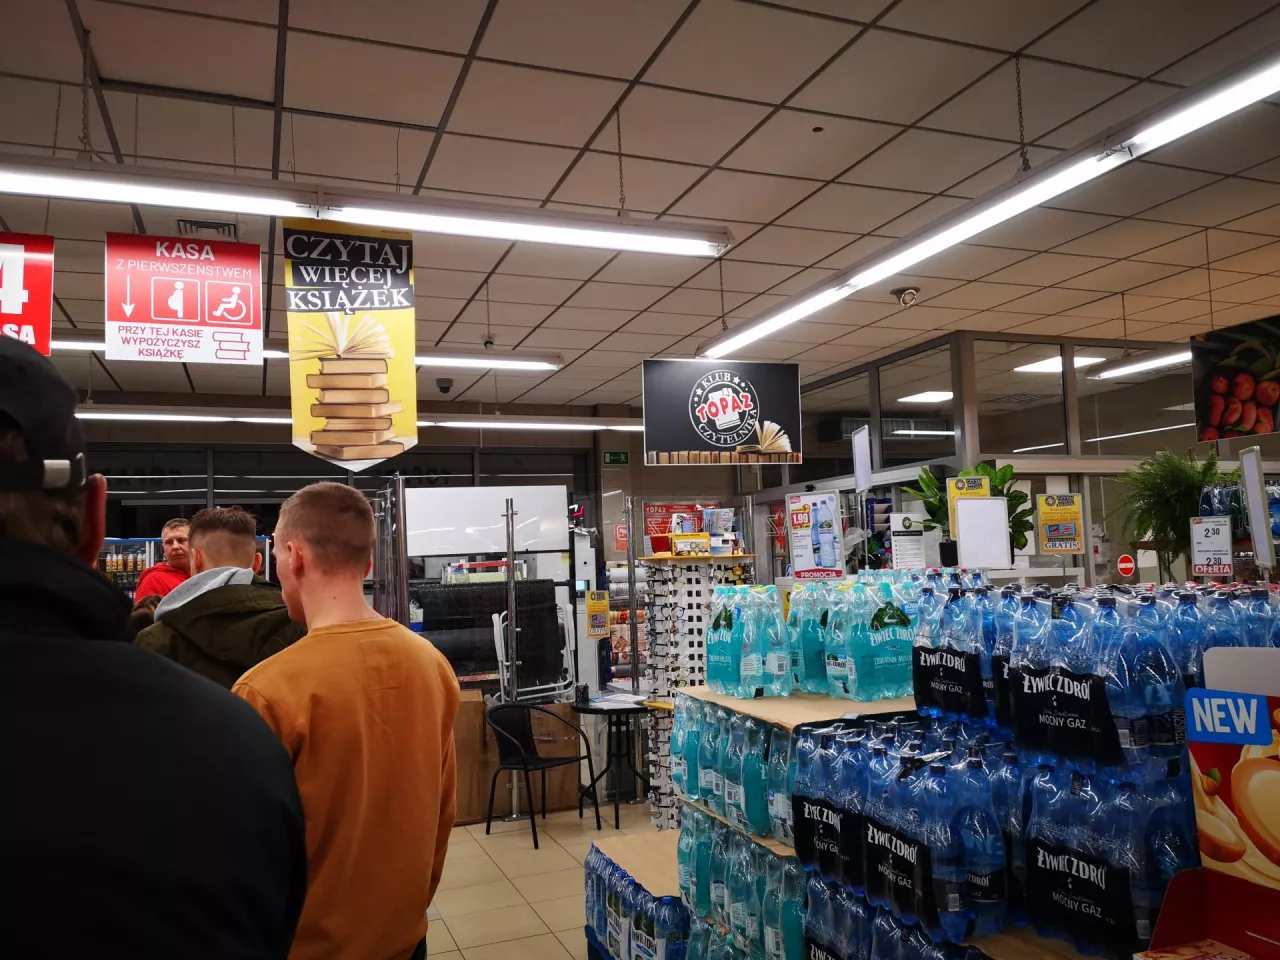 Topaz uruchomił klub czytelnika. W niektórych sklepach sieci pojawiły się czytelnie (fot. wiadomoscihandlowe.pl)